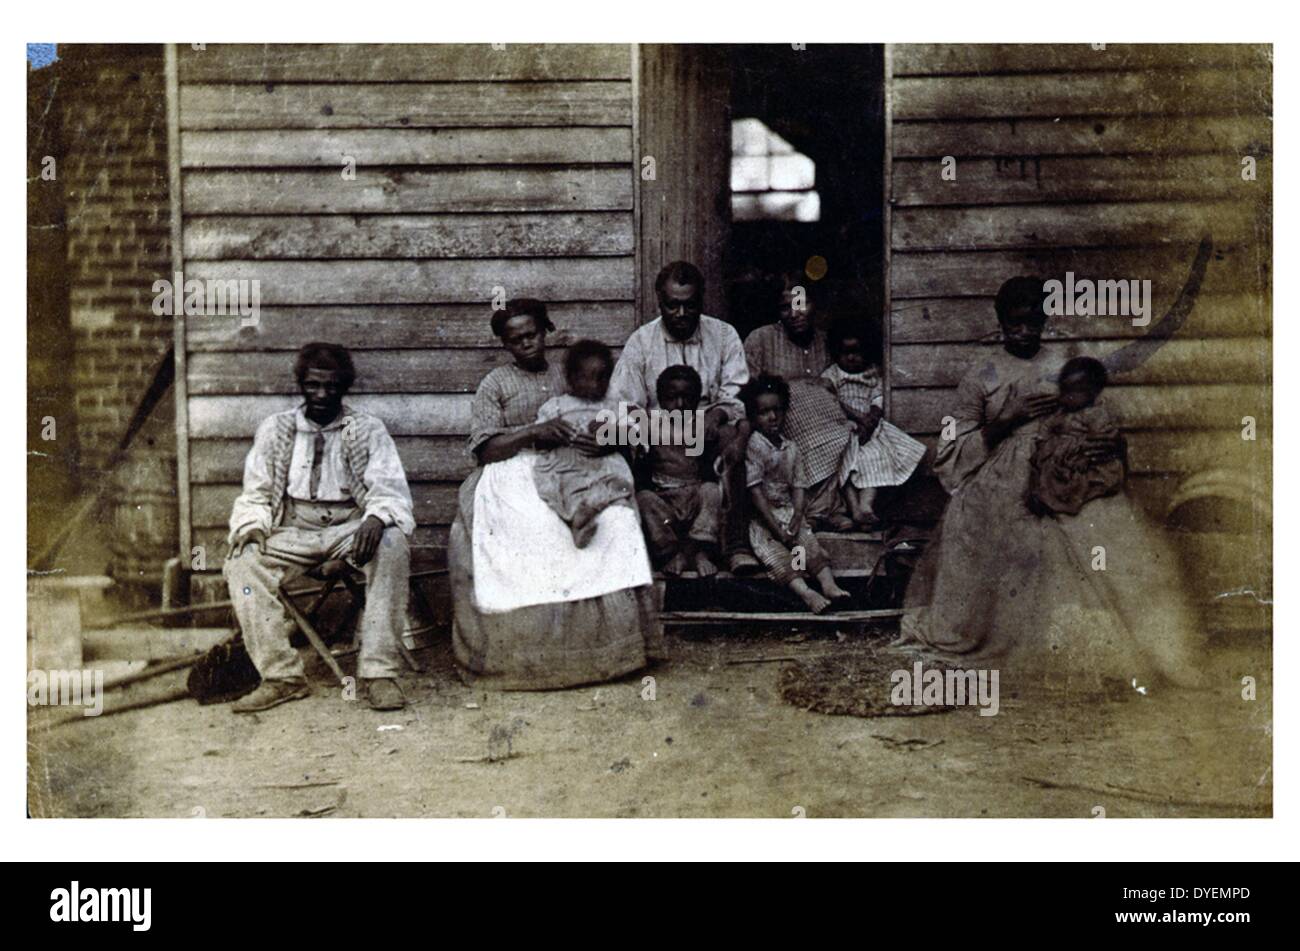 Familie der Slaves Gaines' Haus. Veröffentlicht 1861 oder 1862. African American slave Familie oder Familien vor Holz- Haus, Washington, D.C. oder Hampton, Virginia gestellt. Stockfoto